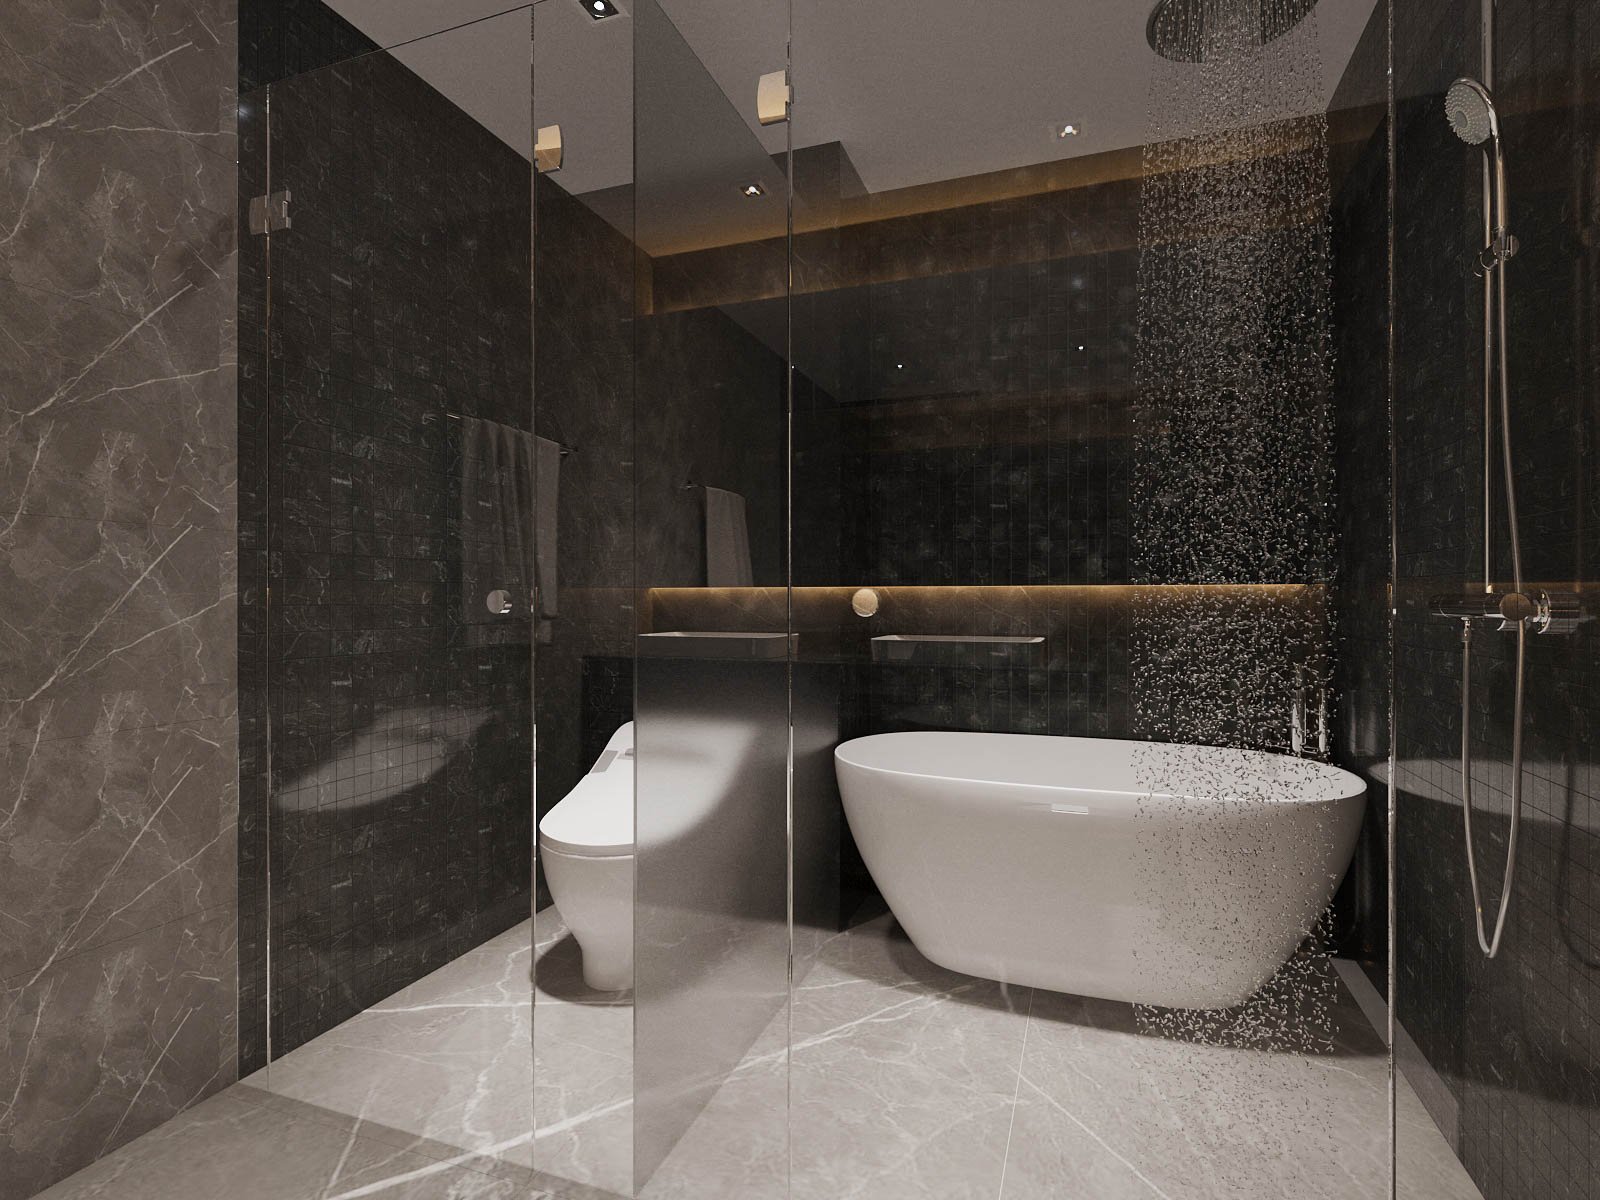 Sự kết hợp giữa tắm đứng và bồn tắm nằm mang đến sự thoải mái, thư thái cho người dùng.